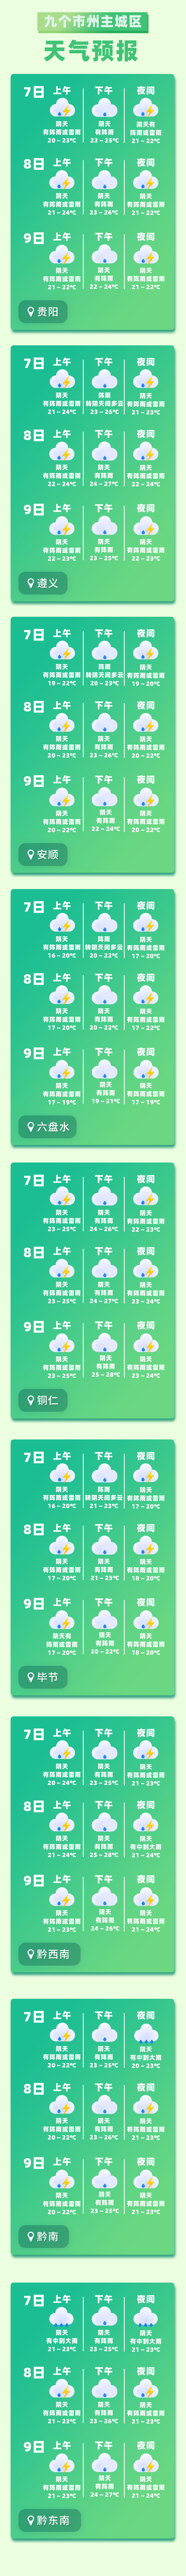 高考气象站丨@高考学子  这是高考期间贵州最新天气预报,请查收!